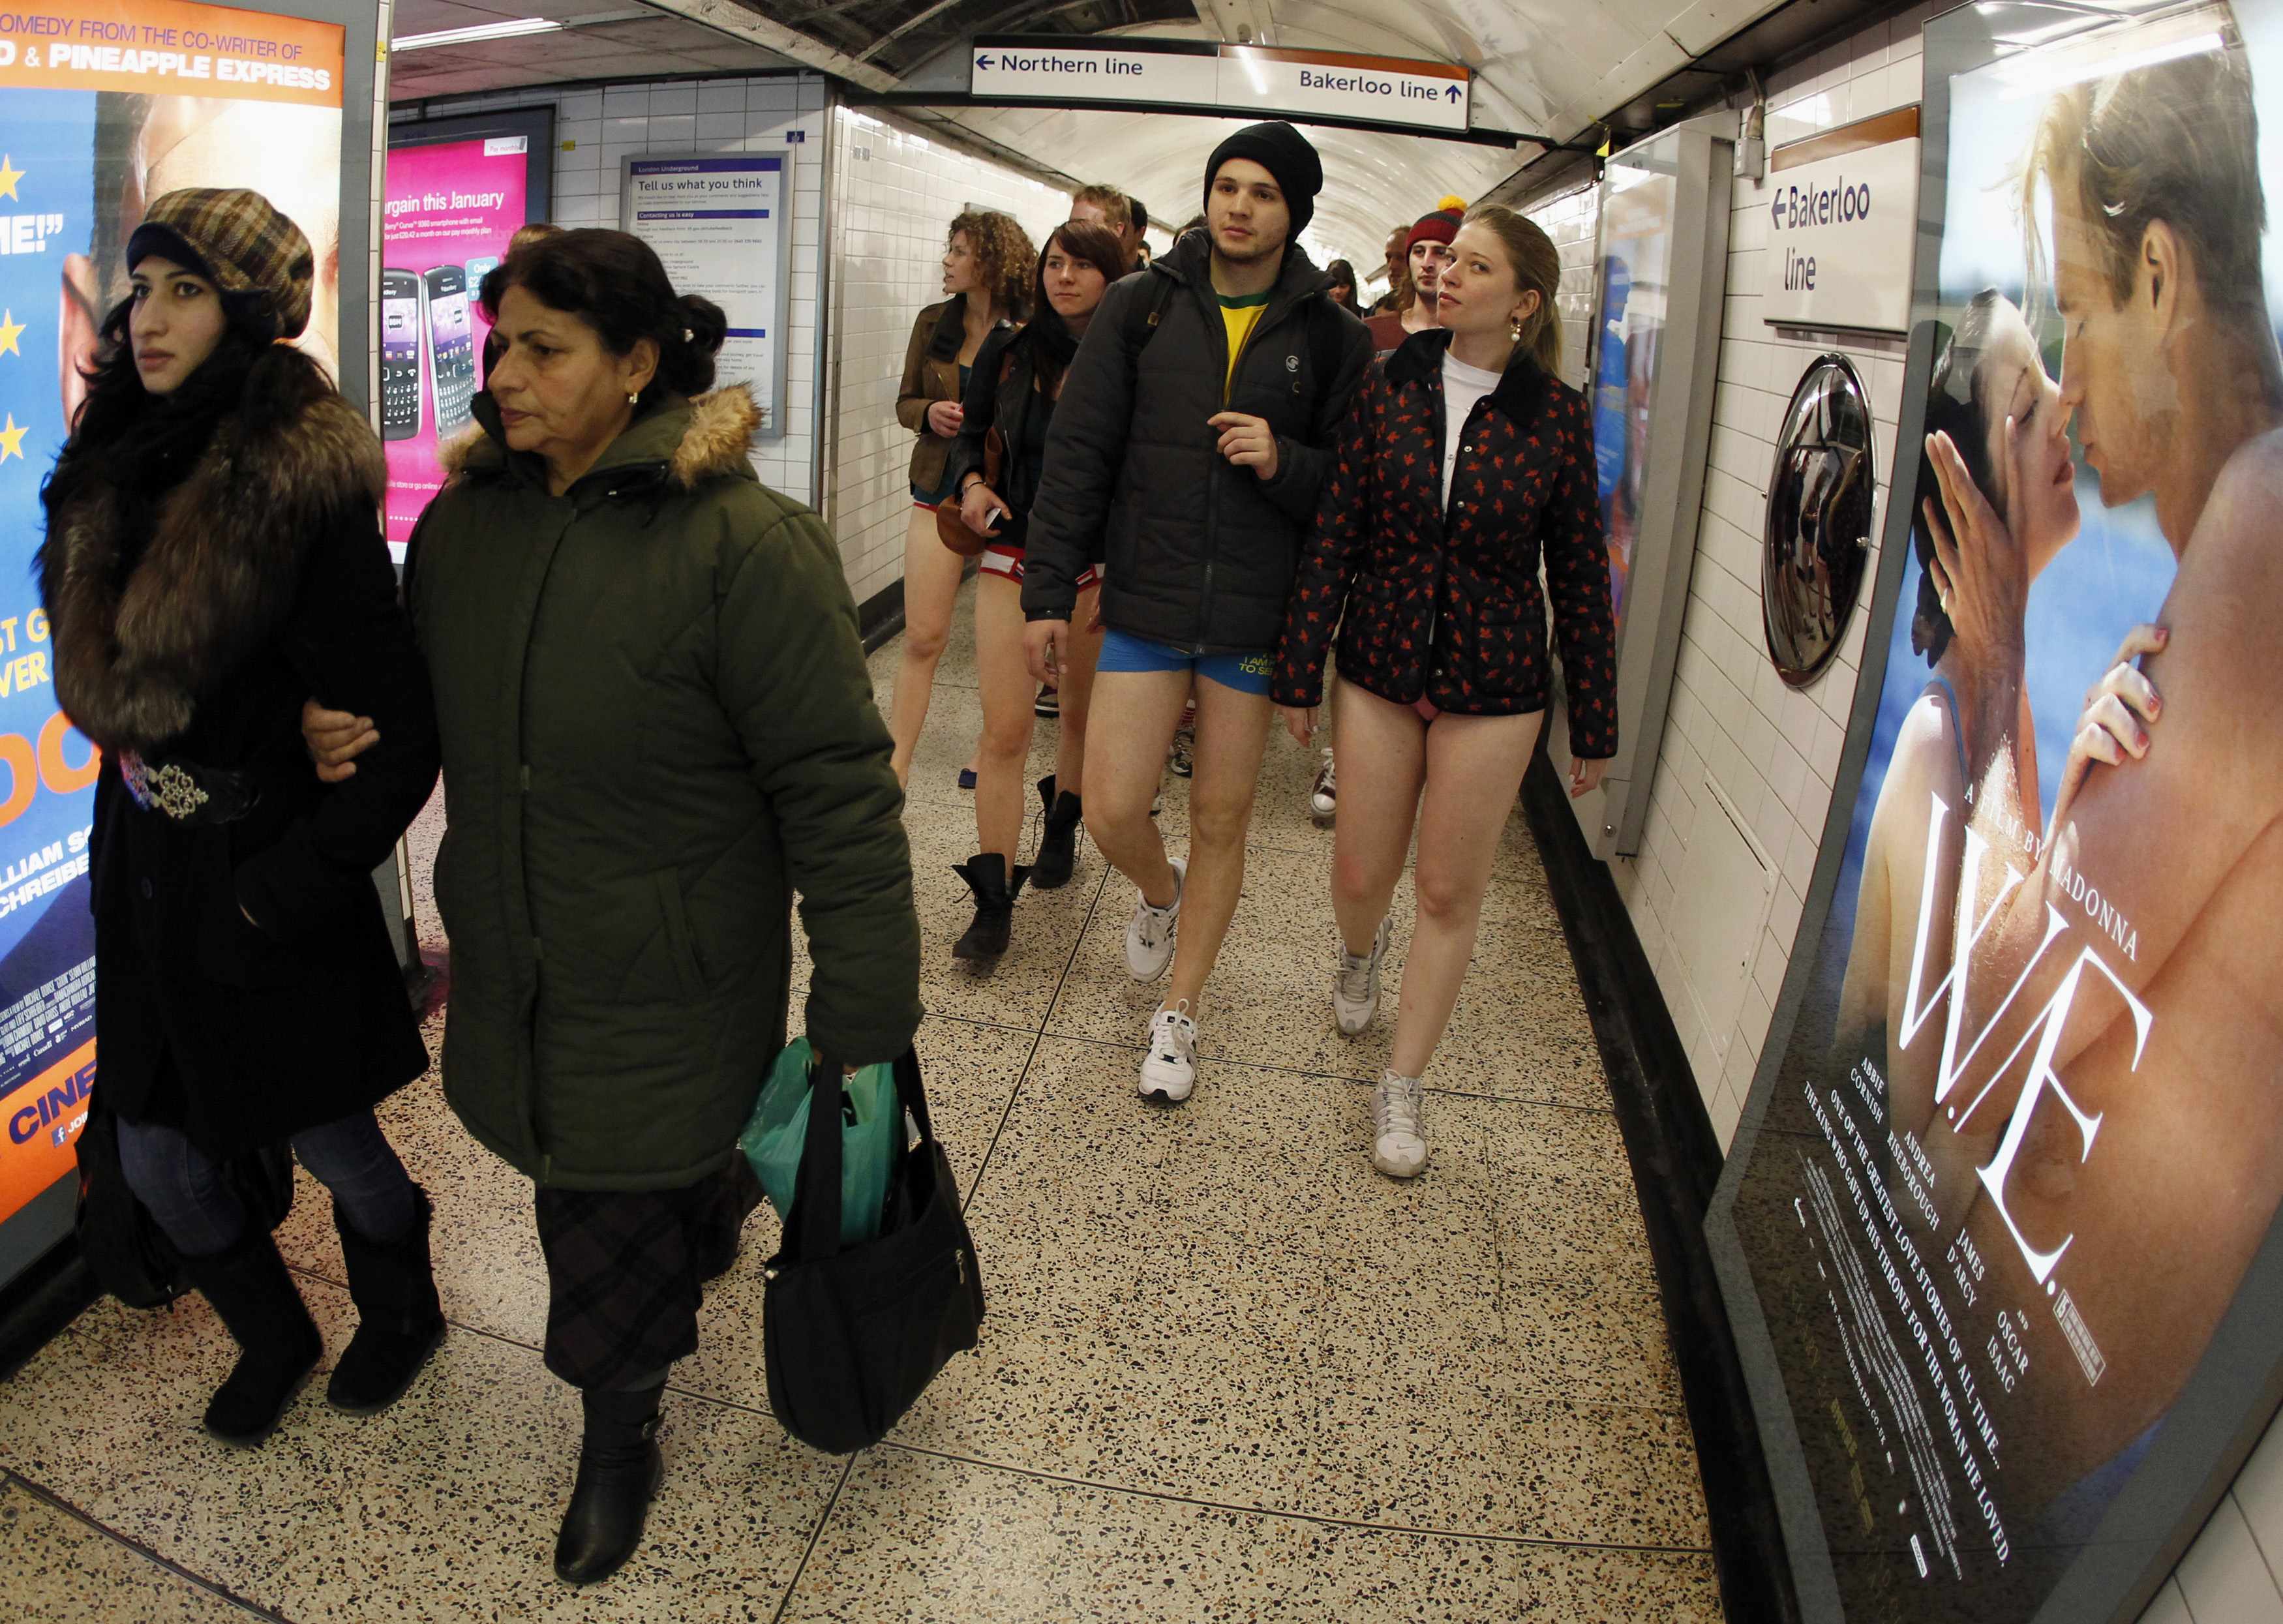  Μια συνηθισμένη μέρα στο Μετρό αλλά χωρίς... παντελόνια! Δείτε  φωτογραφίες